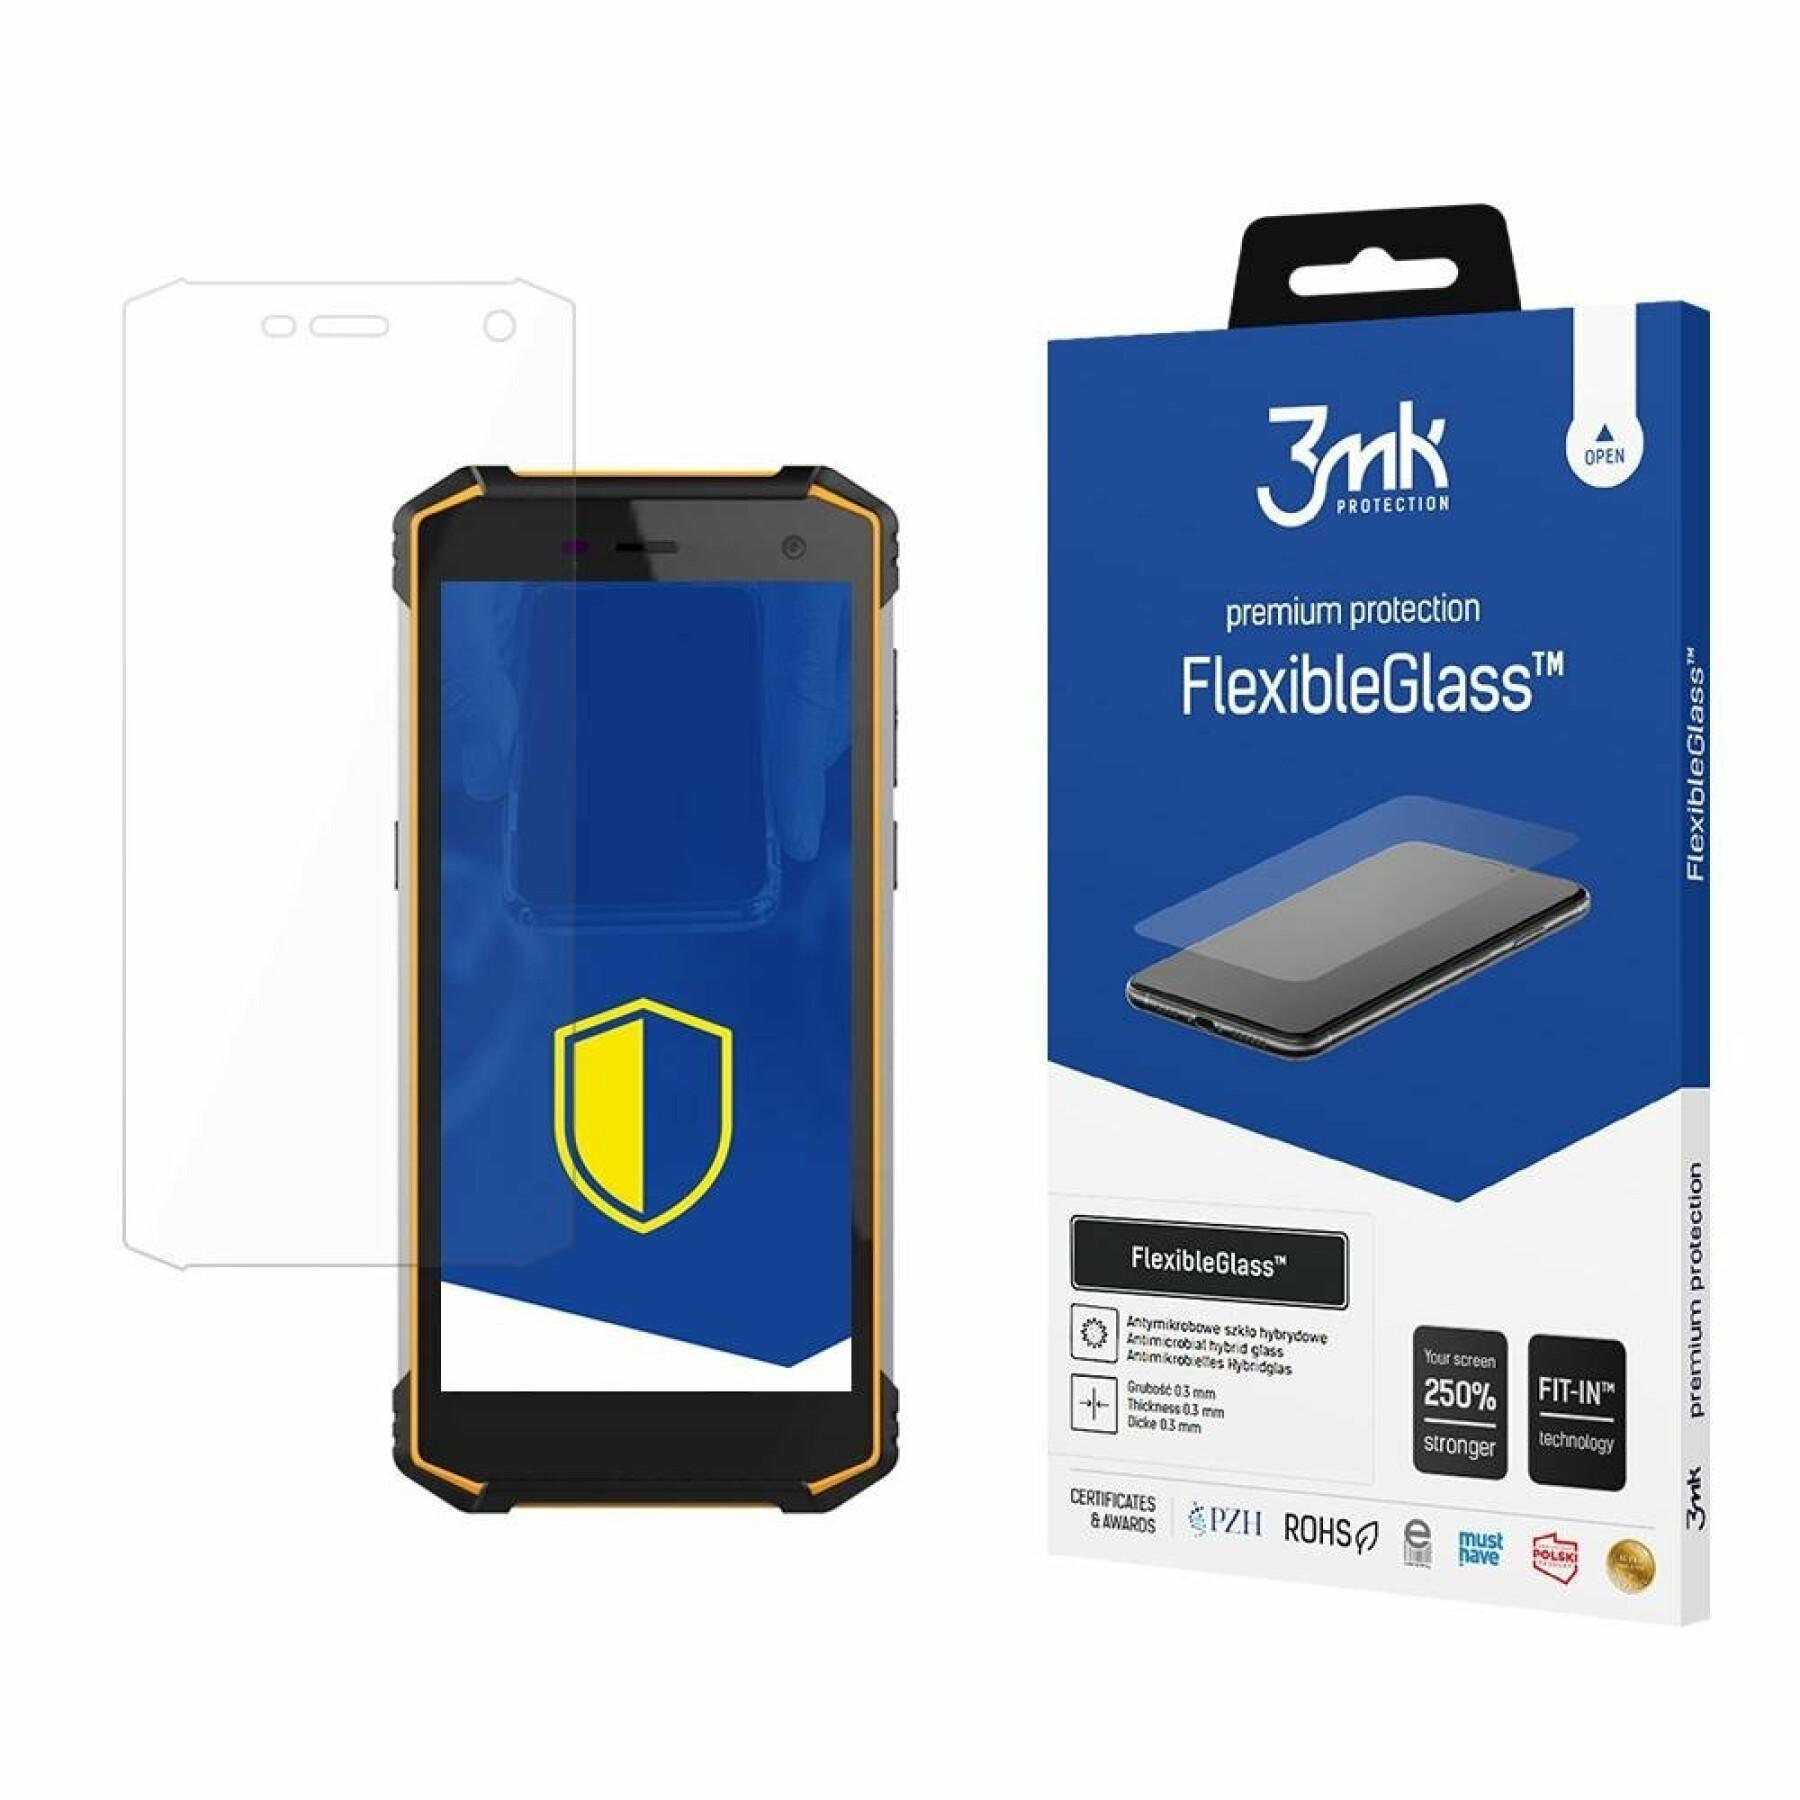 Vetro ibrido 3MK MyPhone Hammer Energy 2 - FlexibeGlass™